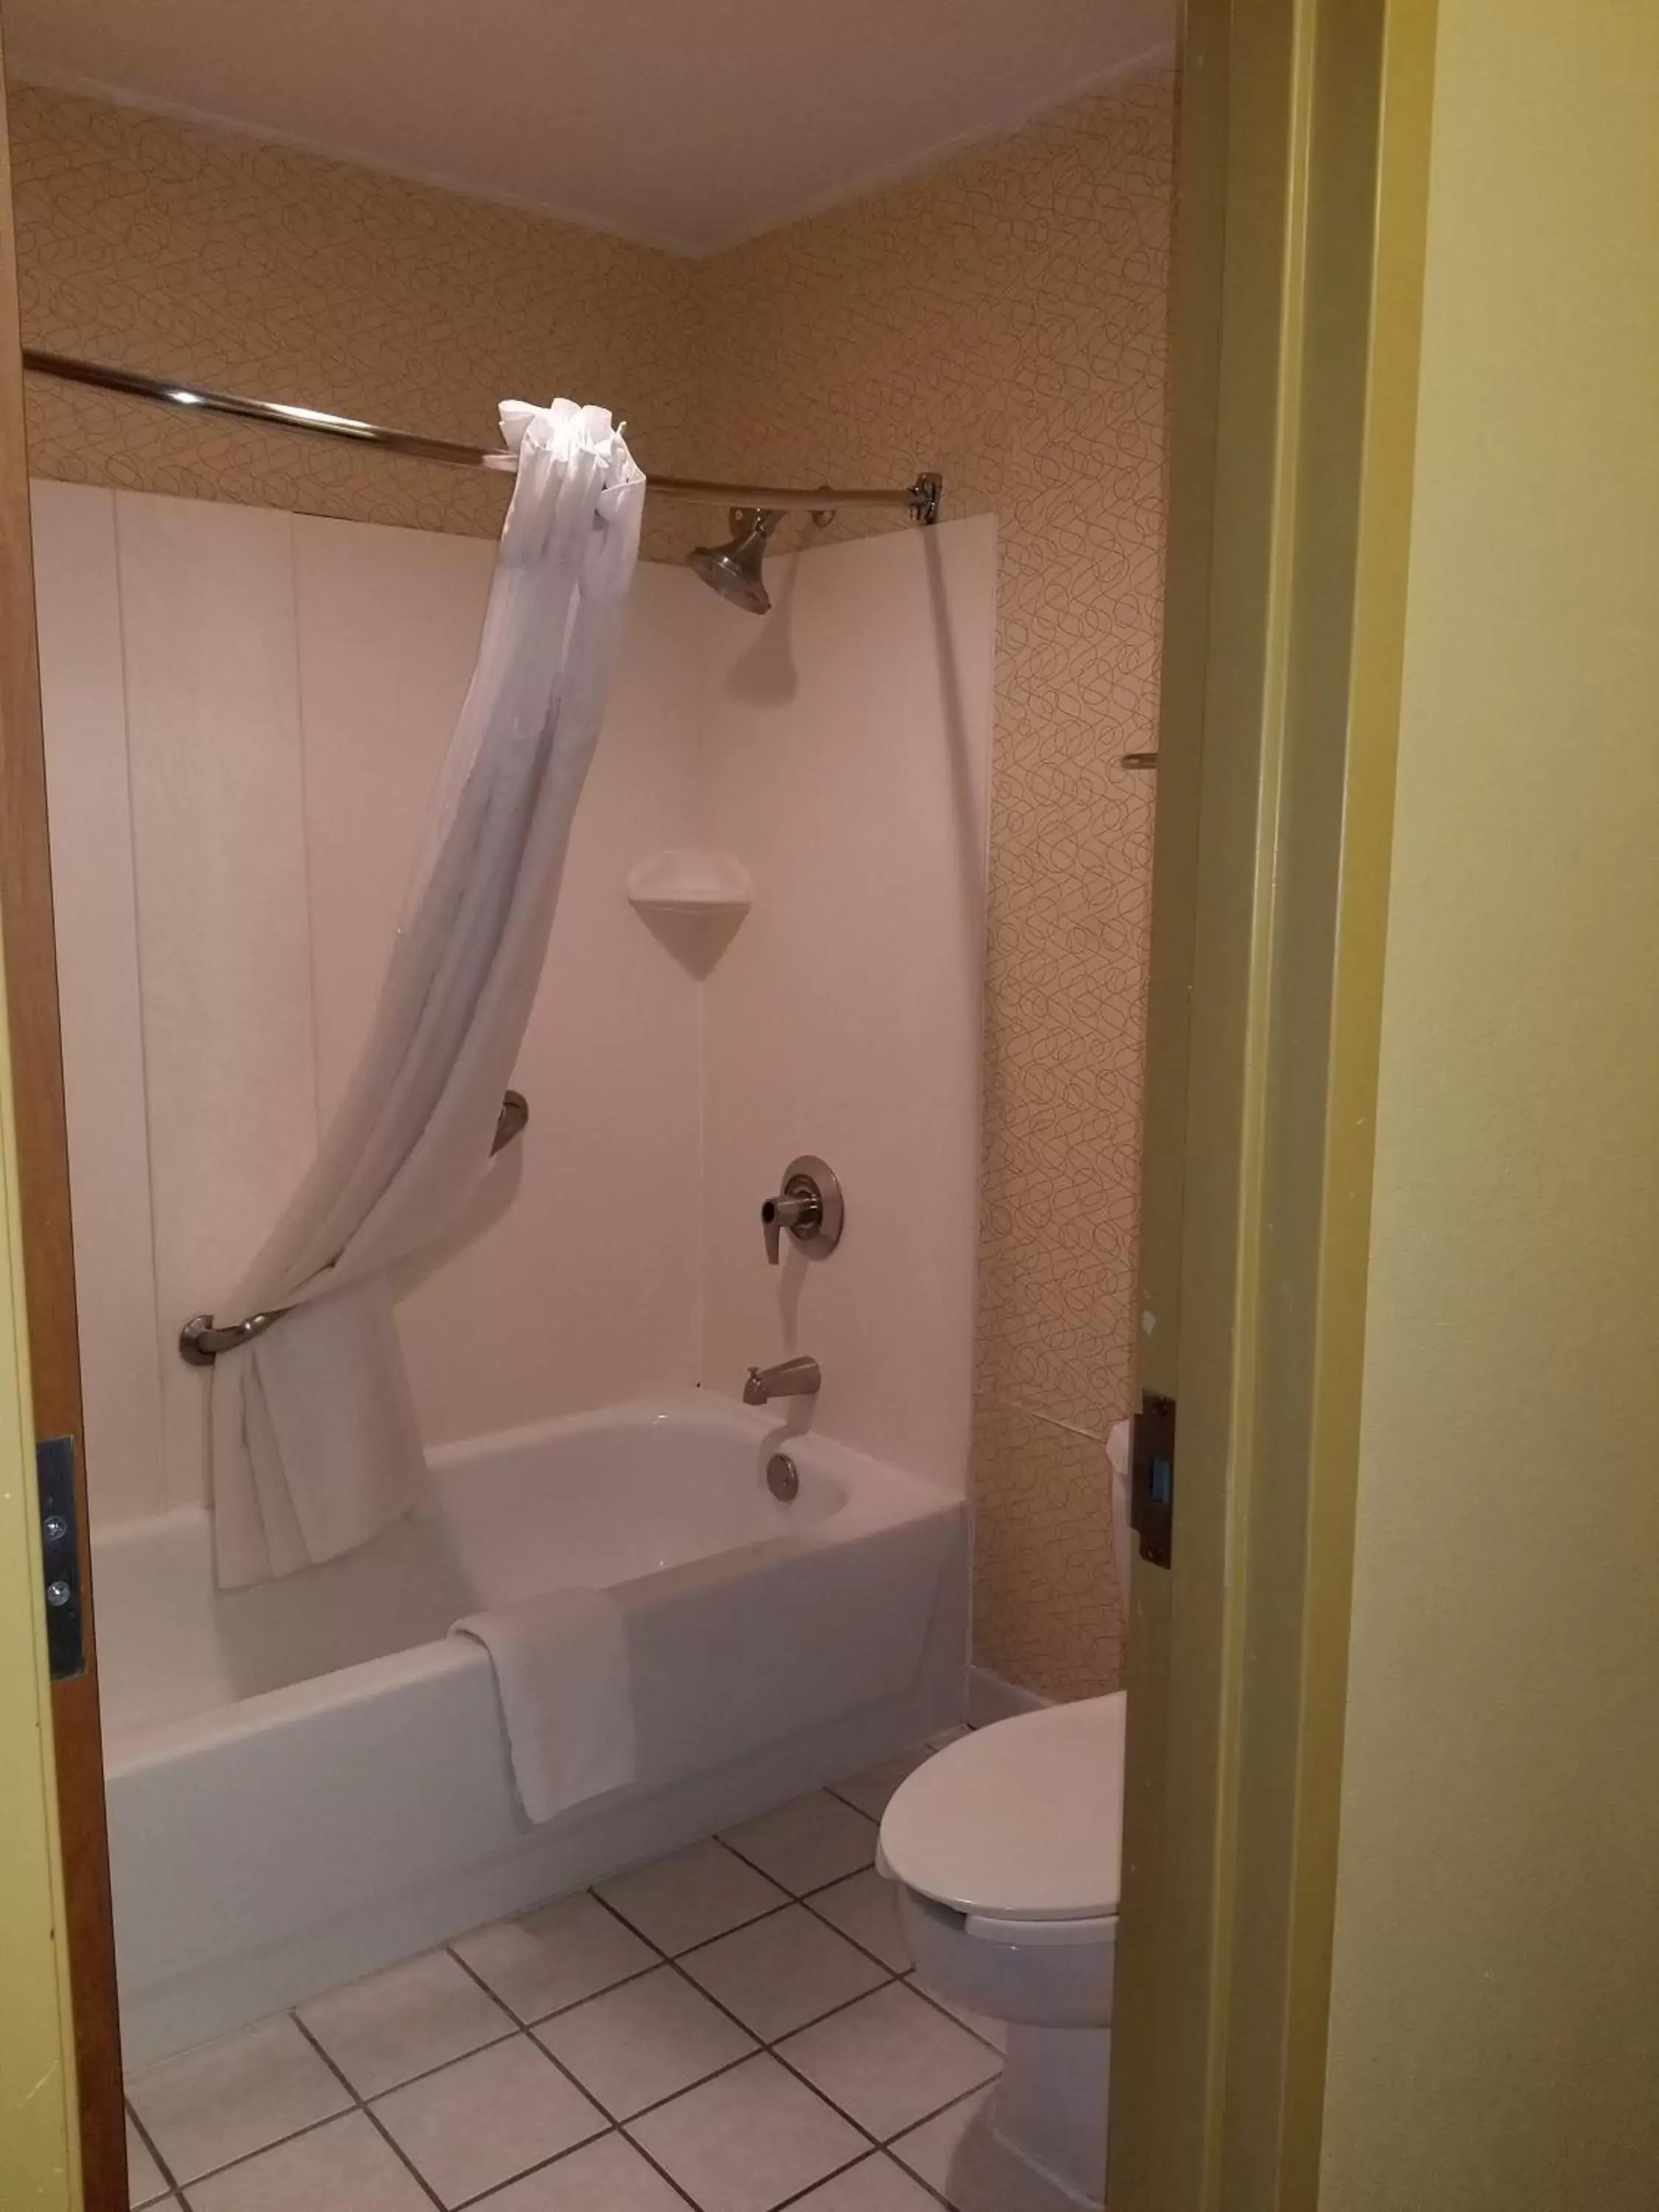 Bathroom in Days Inn by Wyndham Tulsa Central